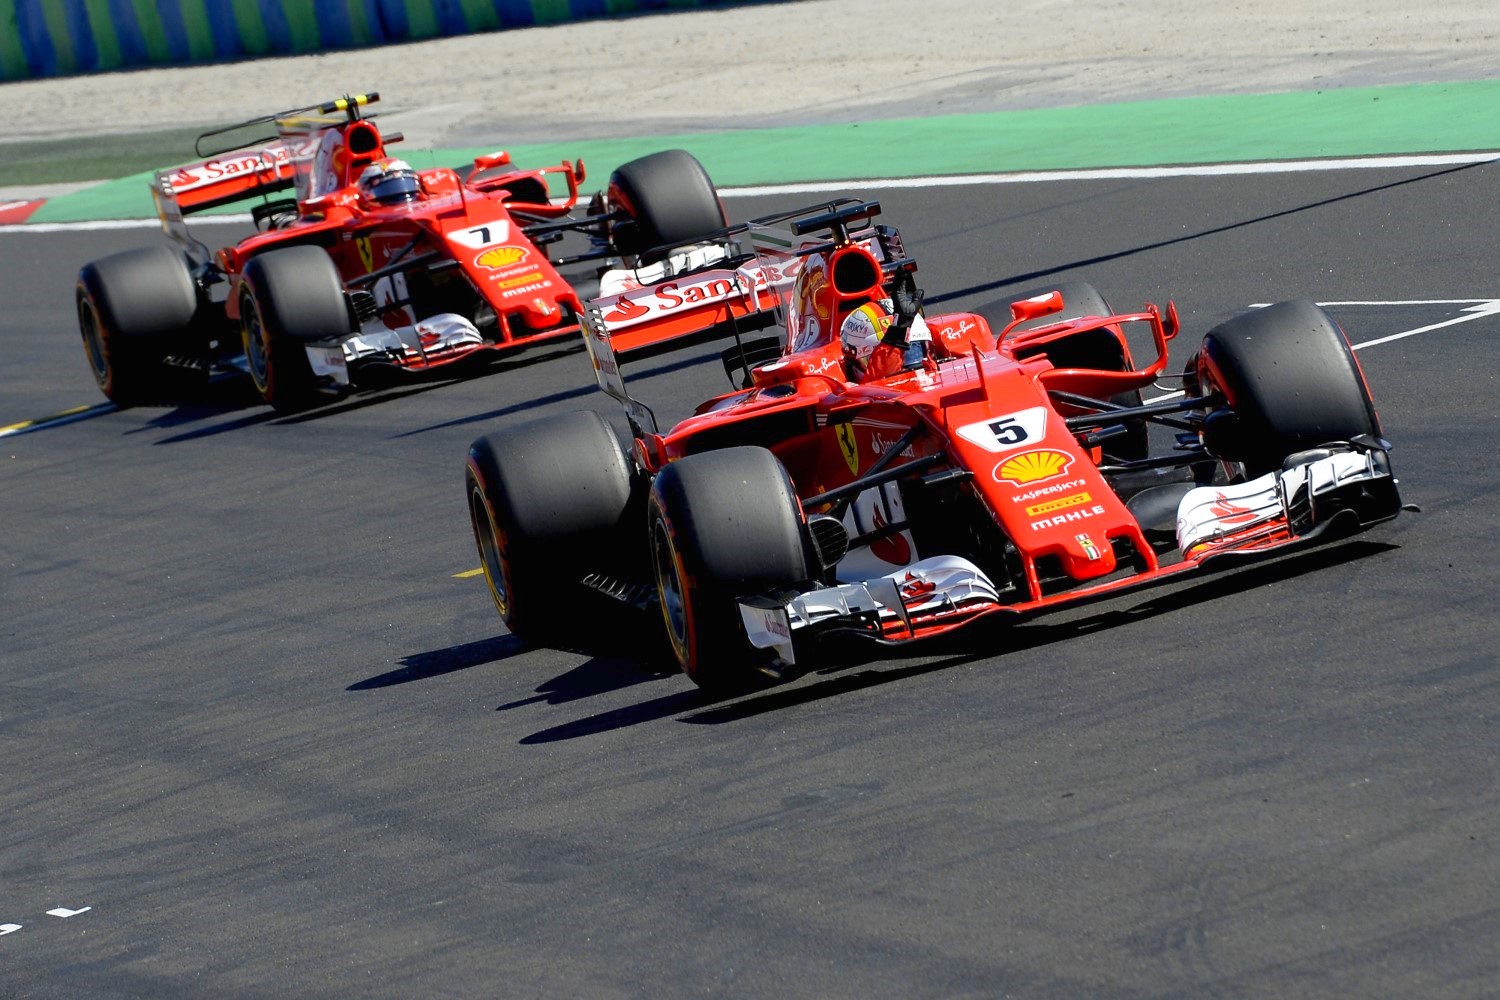 Vettel and Raikkonen 1-2 for Ferrari